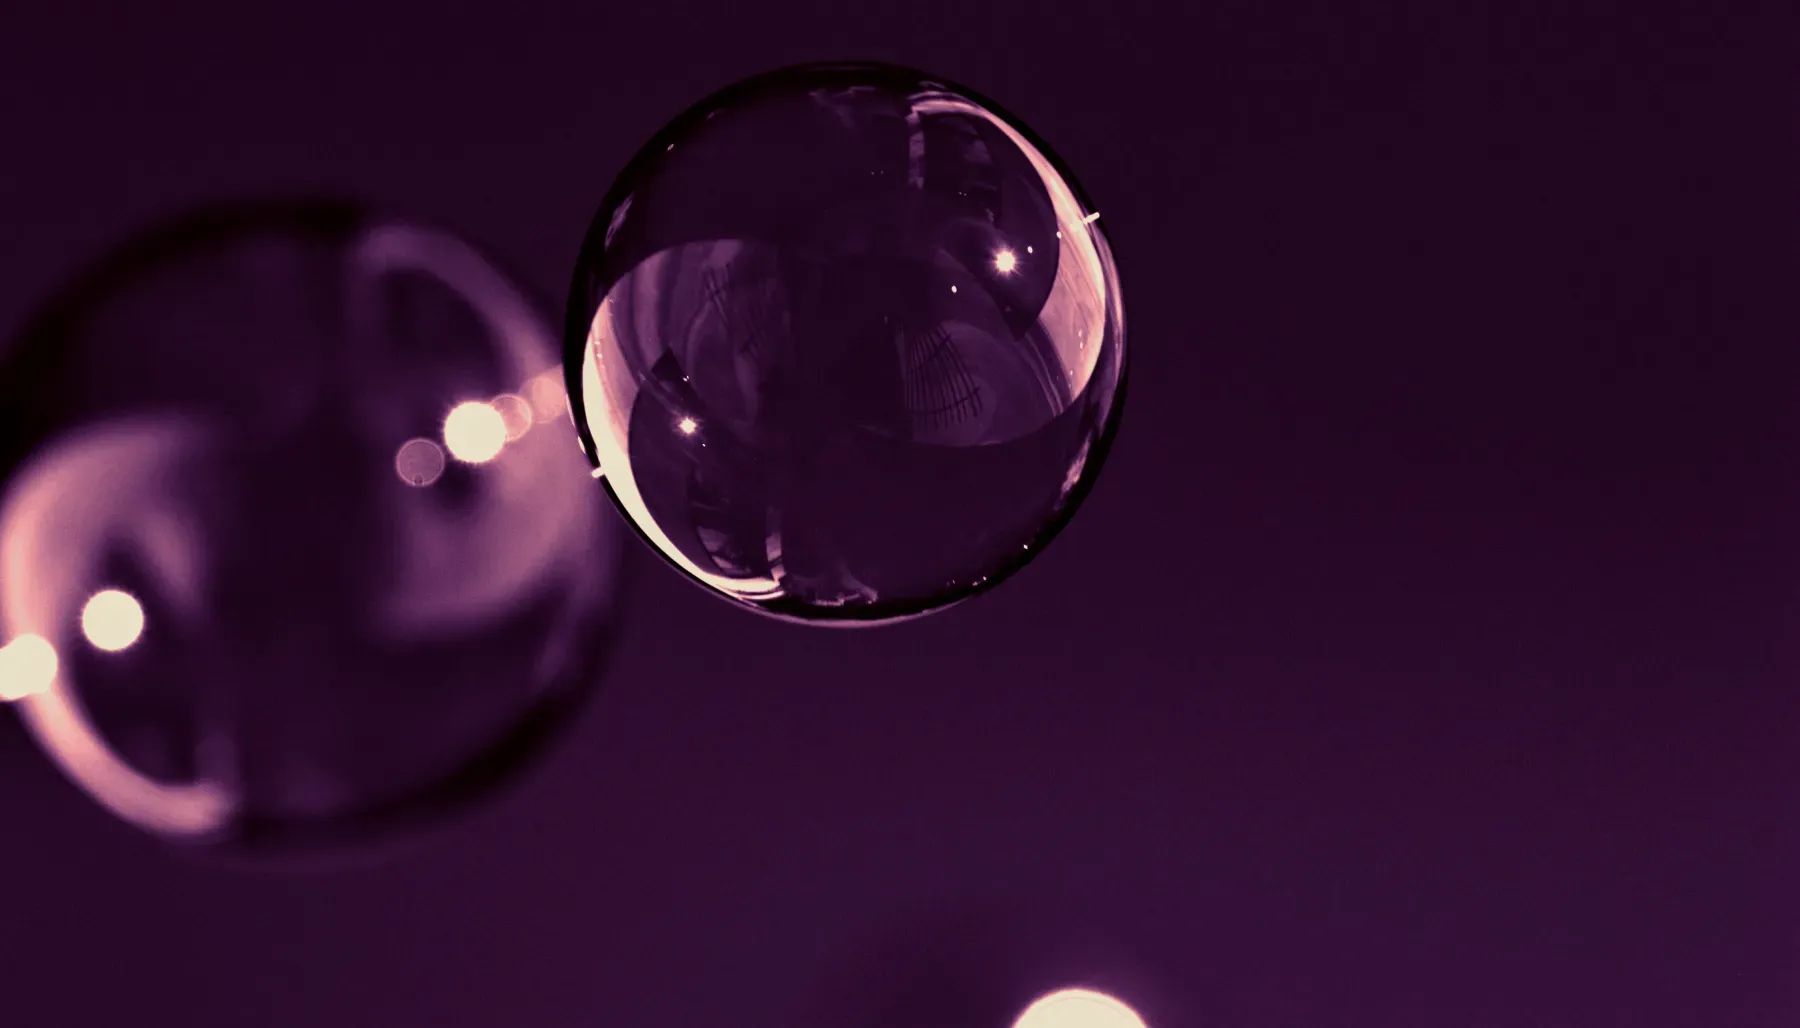 Burbujas flotando en un fondo violeta.